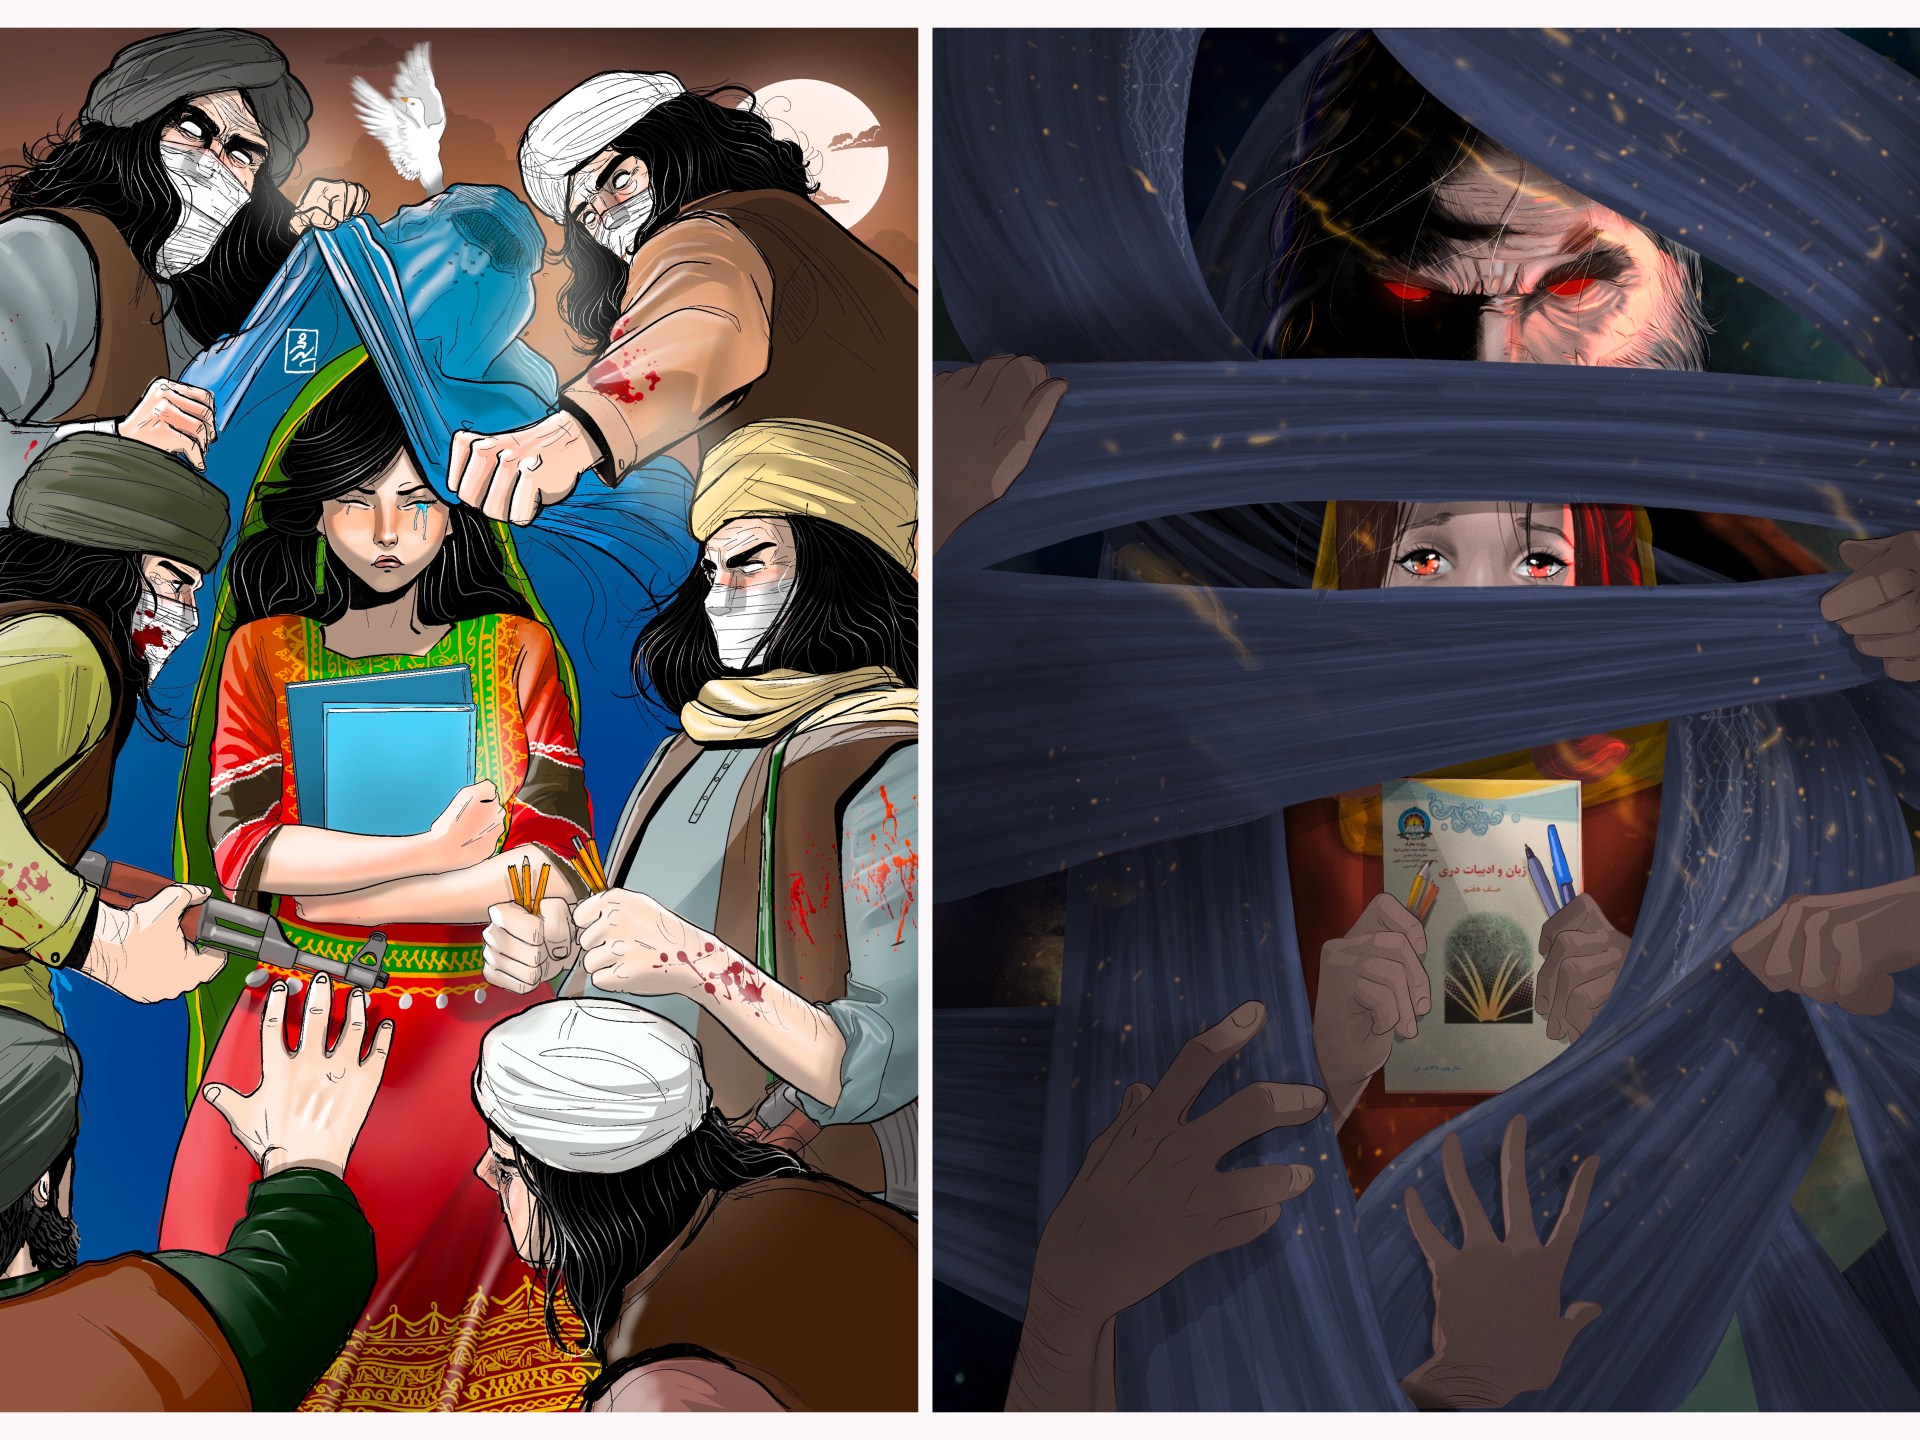 Afghan cartoonist, now a refugee, sheds light on plight of women